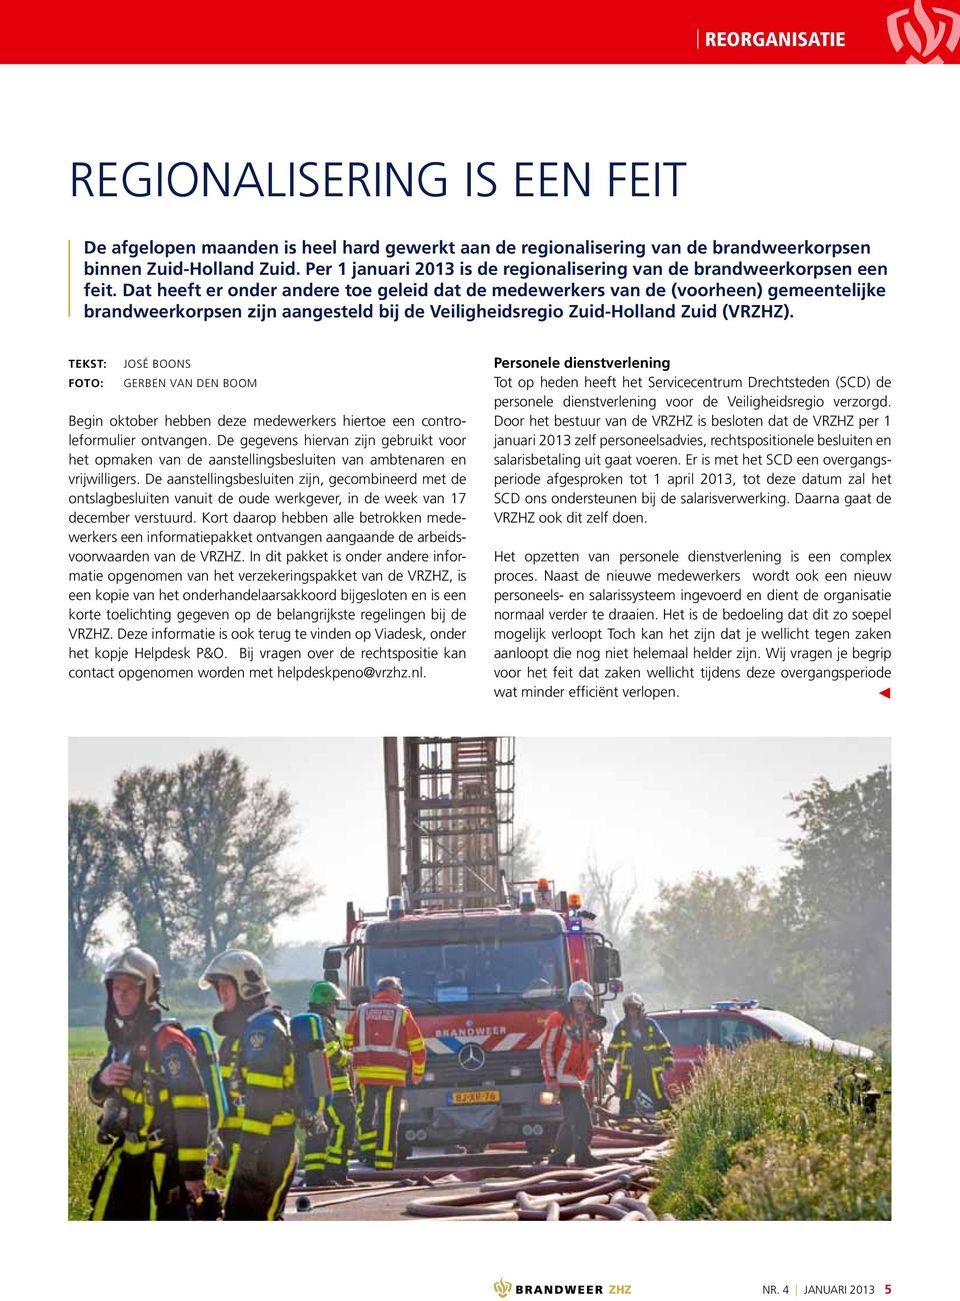 Dat heeft er onder andere toe geleid dat de medewerkers van de (voorheen) gemeentelijke brandweerkorpsen zijn aangesteld bij de Veiligheidsregio Zuid-Holland Zuid (VRZHZ).